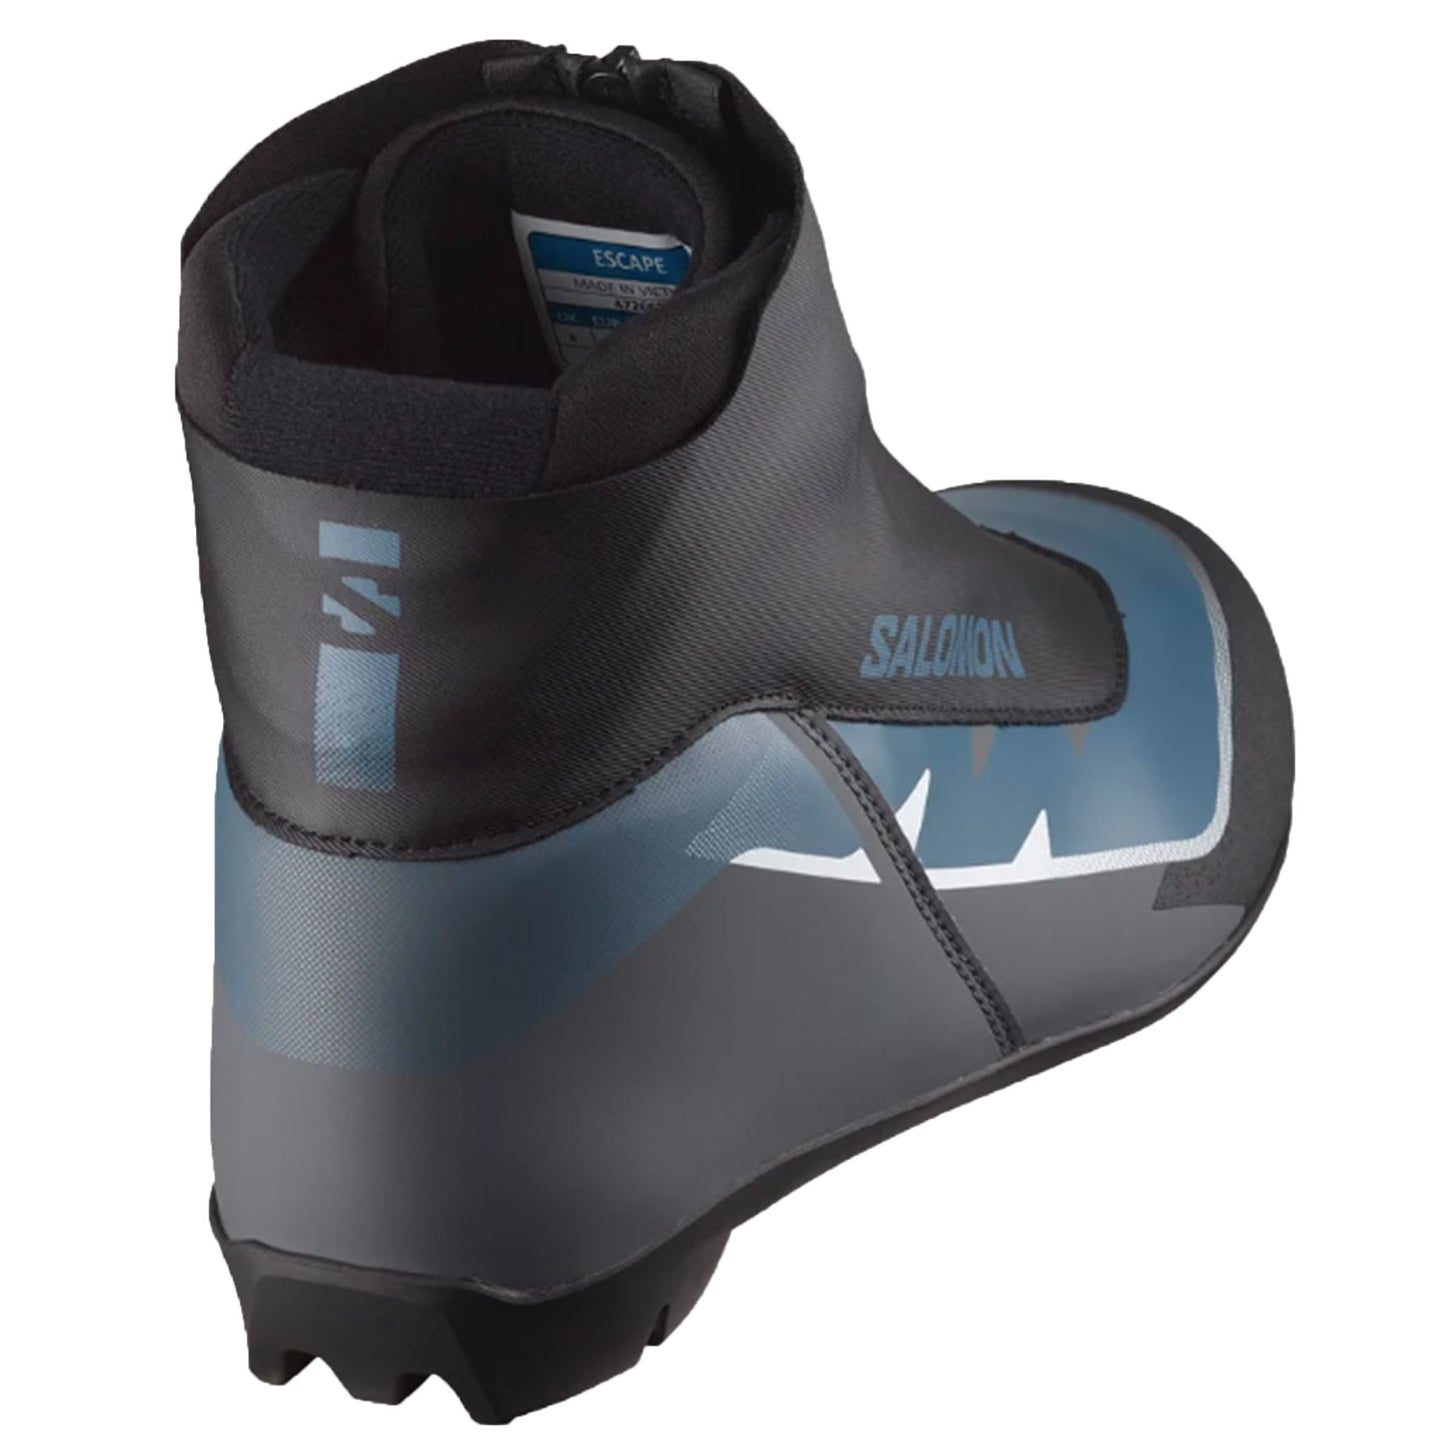 Salomon Escape Nordic Ski Boots